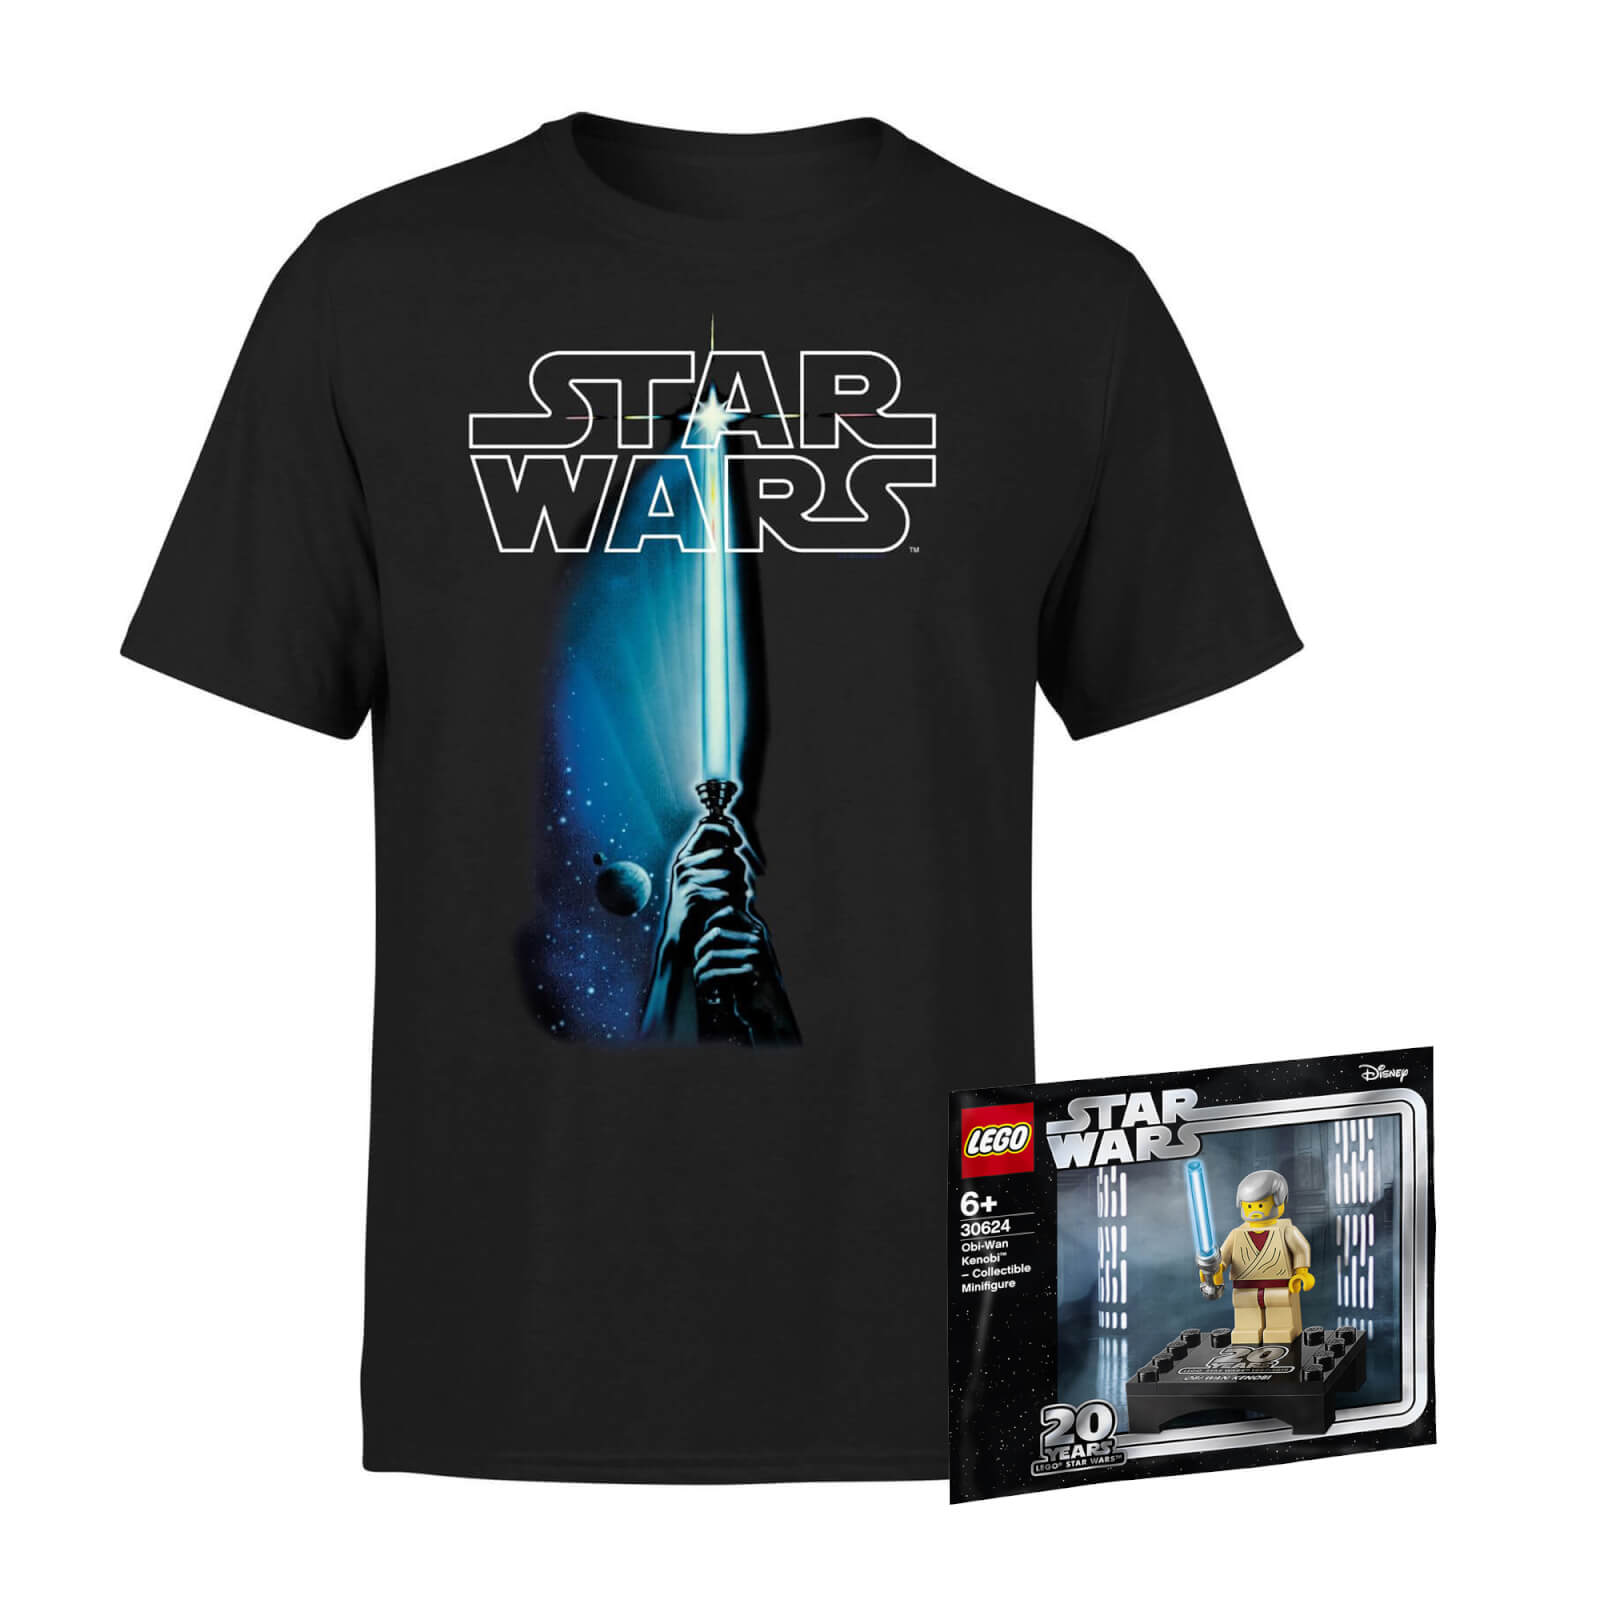 Star Wars Tee & LEGO Minifigure Bundle - Men's - 4XL von Star Wars